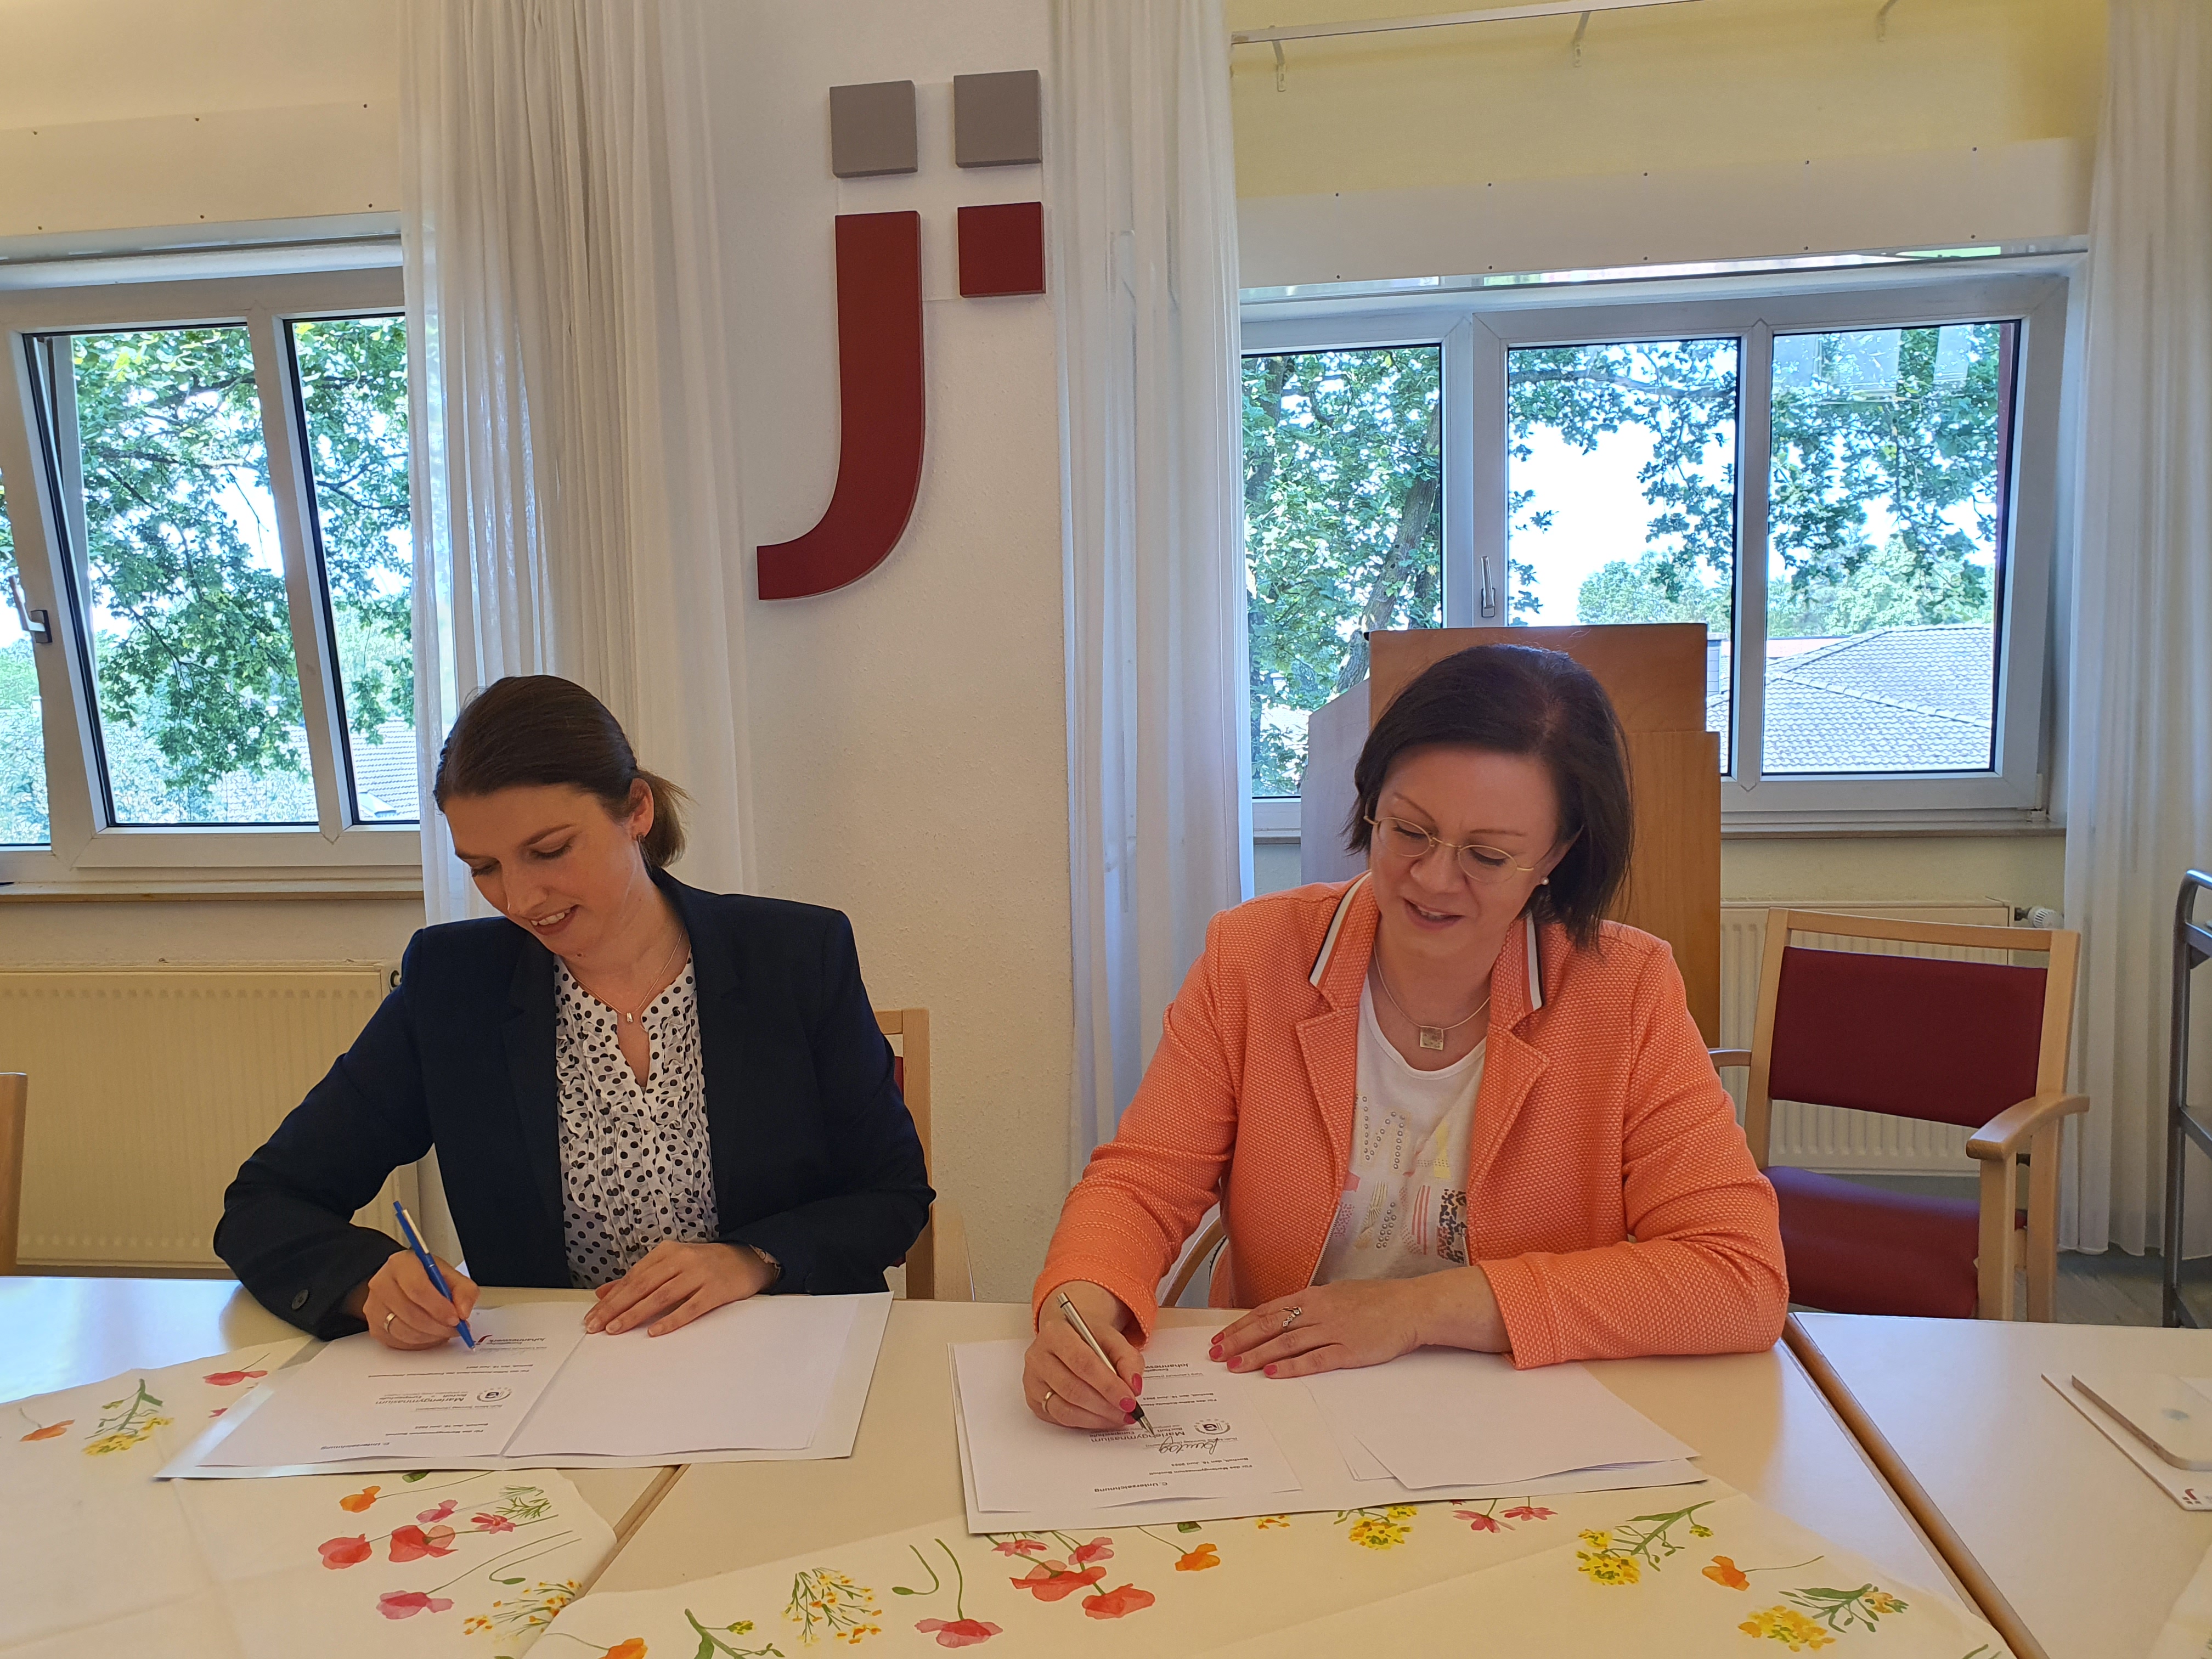 Nachrichtenbild: Unterzeichnung des Kooperationsvertrages mit dem Käthe-Kollwitz-Haus